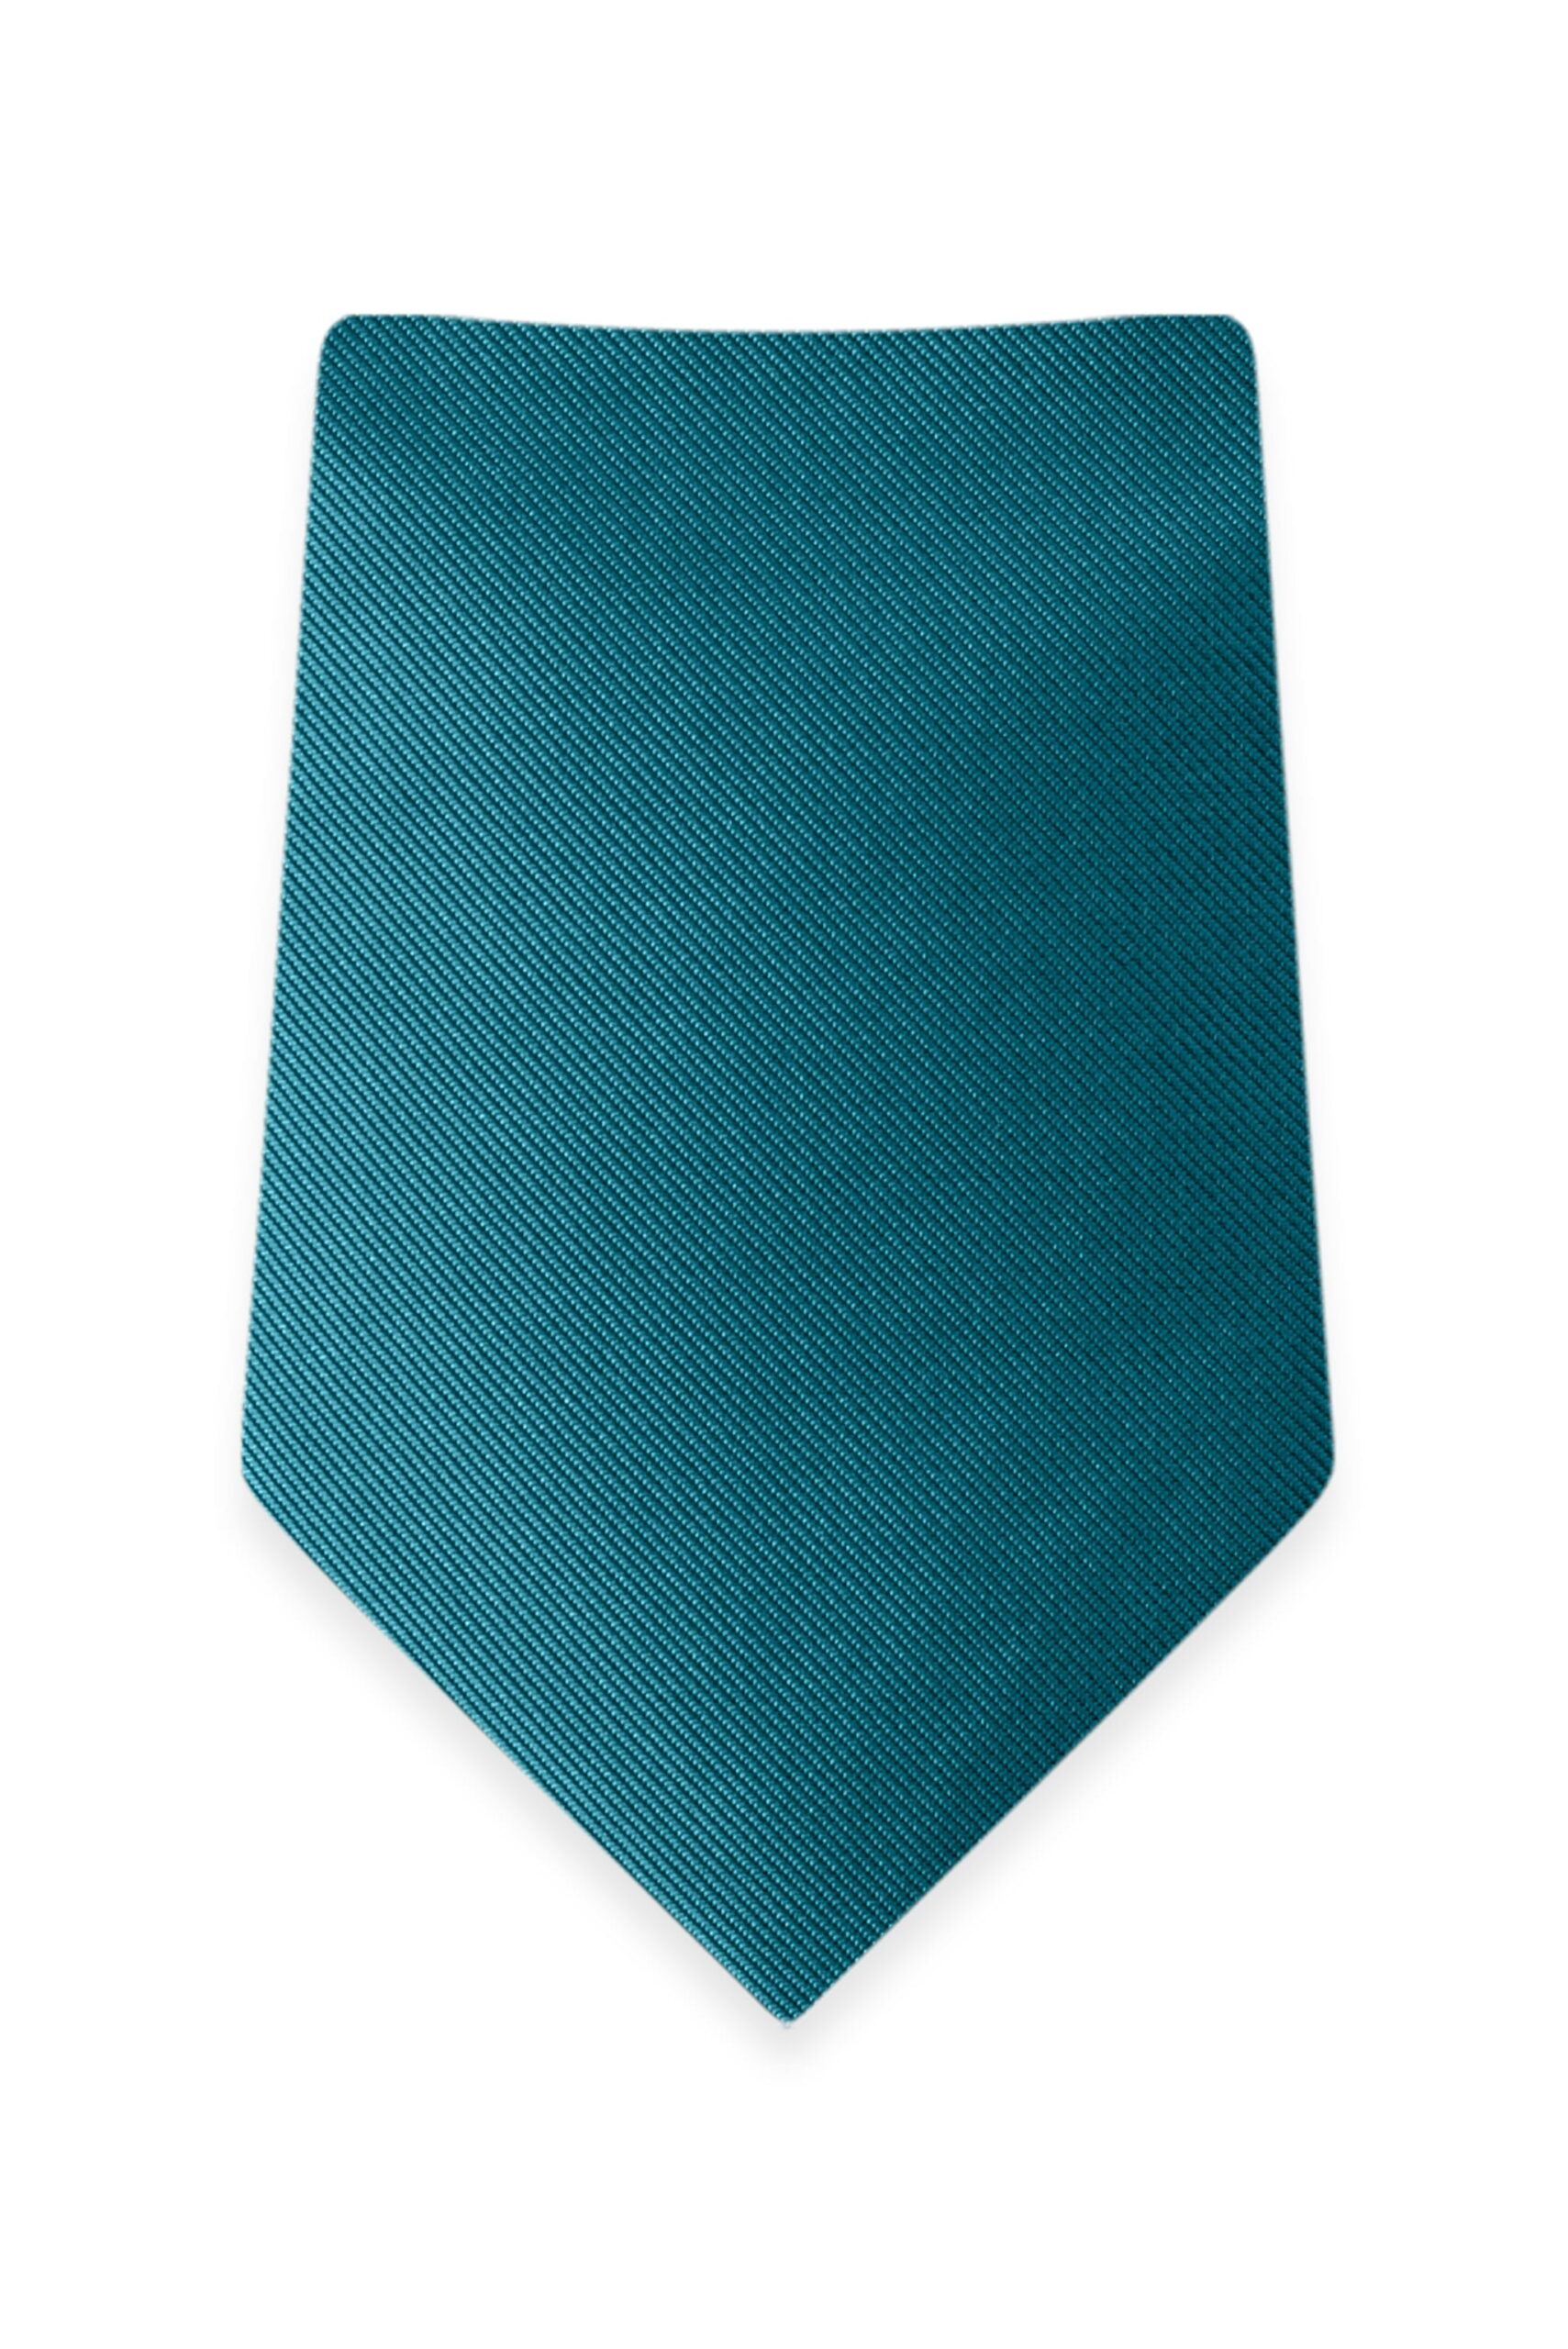 Solid Teal Self-Tie Windsor Tie